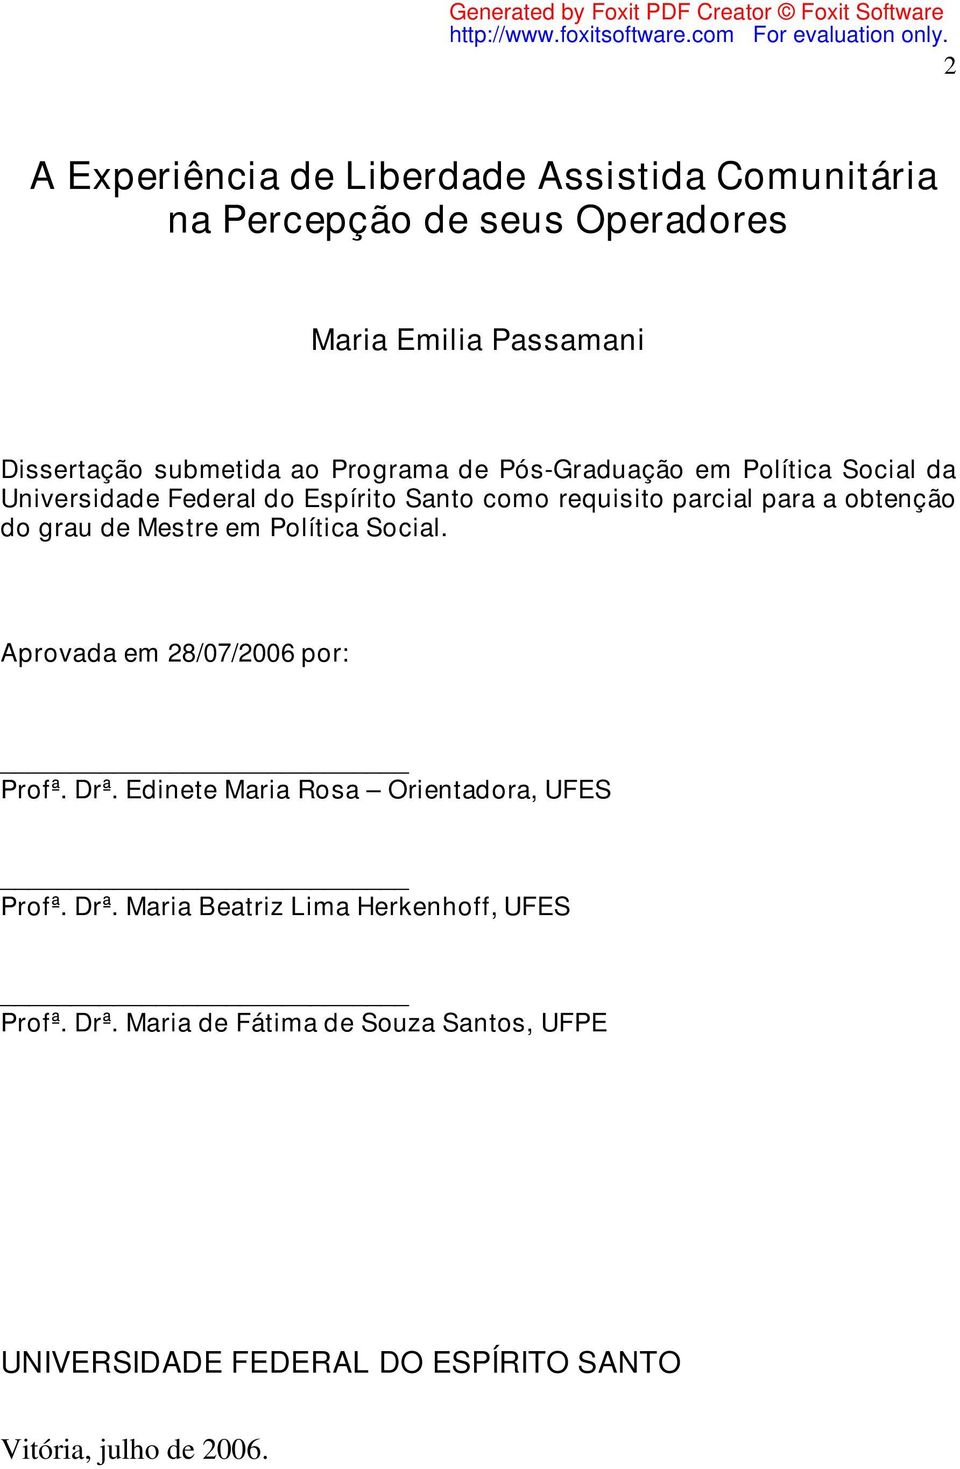 grau de Mestre em Política Social. Aprovada em 28/07/2006 por: Profª. Drª. Edinete Maria Rosa Orientadora, UFES Profª. Drª. Maria Beatriz Lima Herkenhoff, UFES Profª.